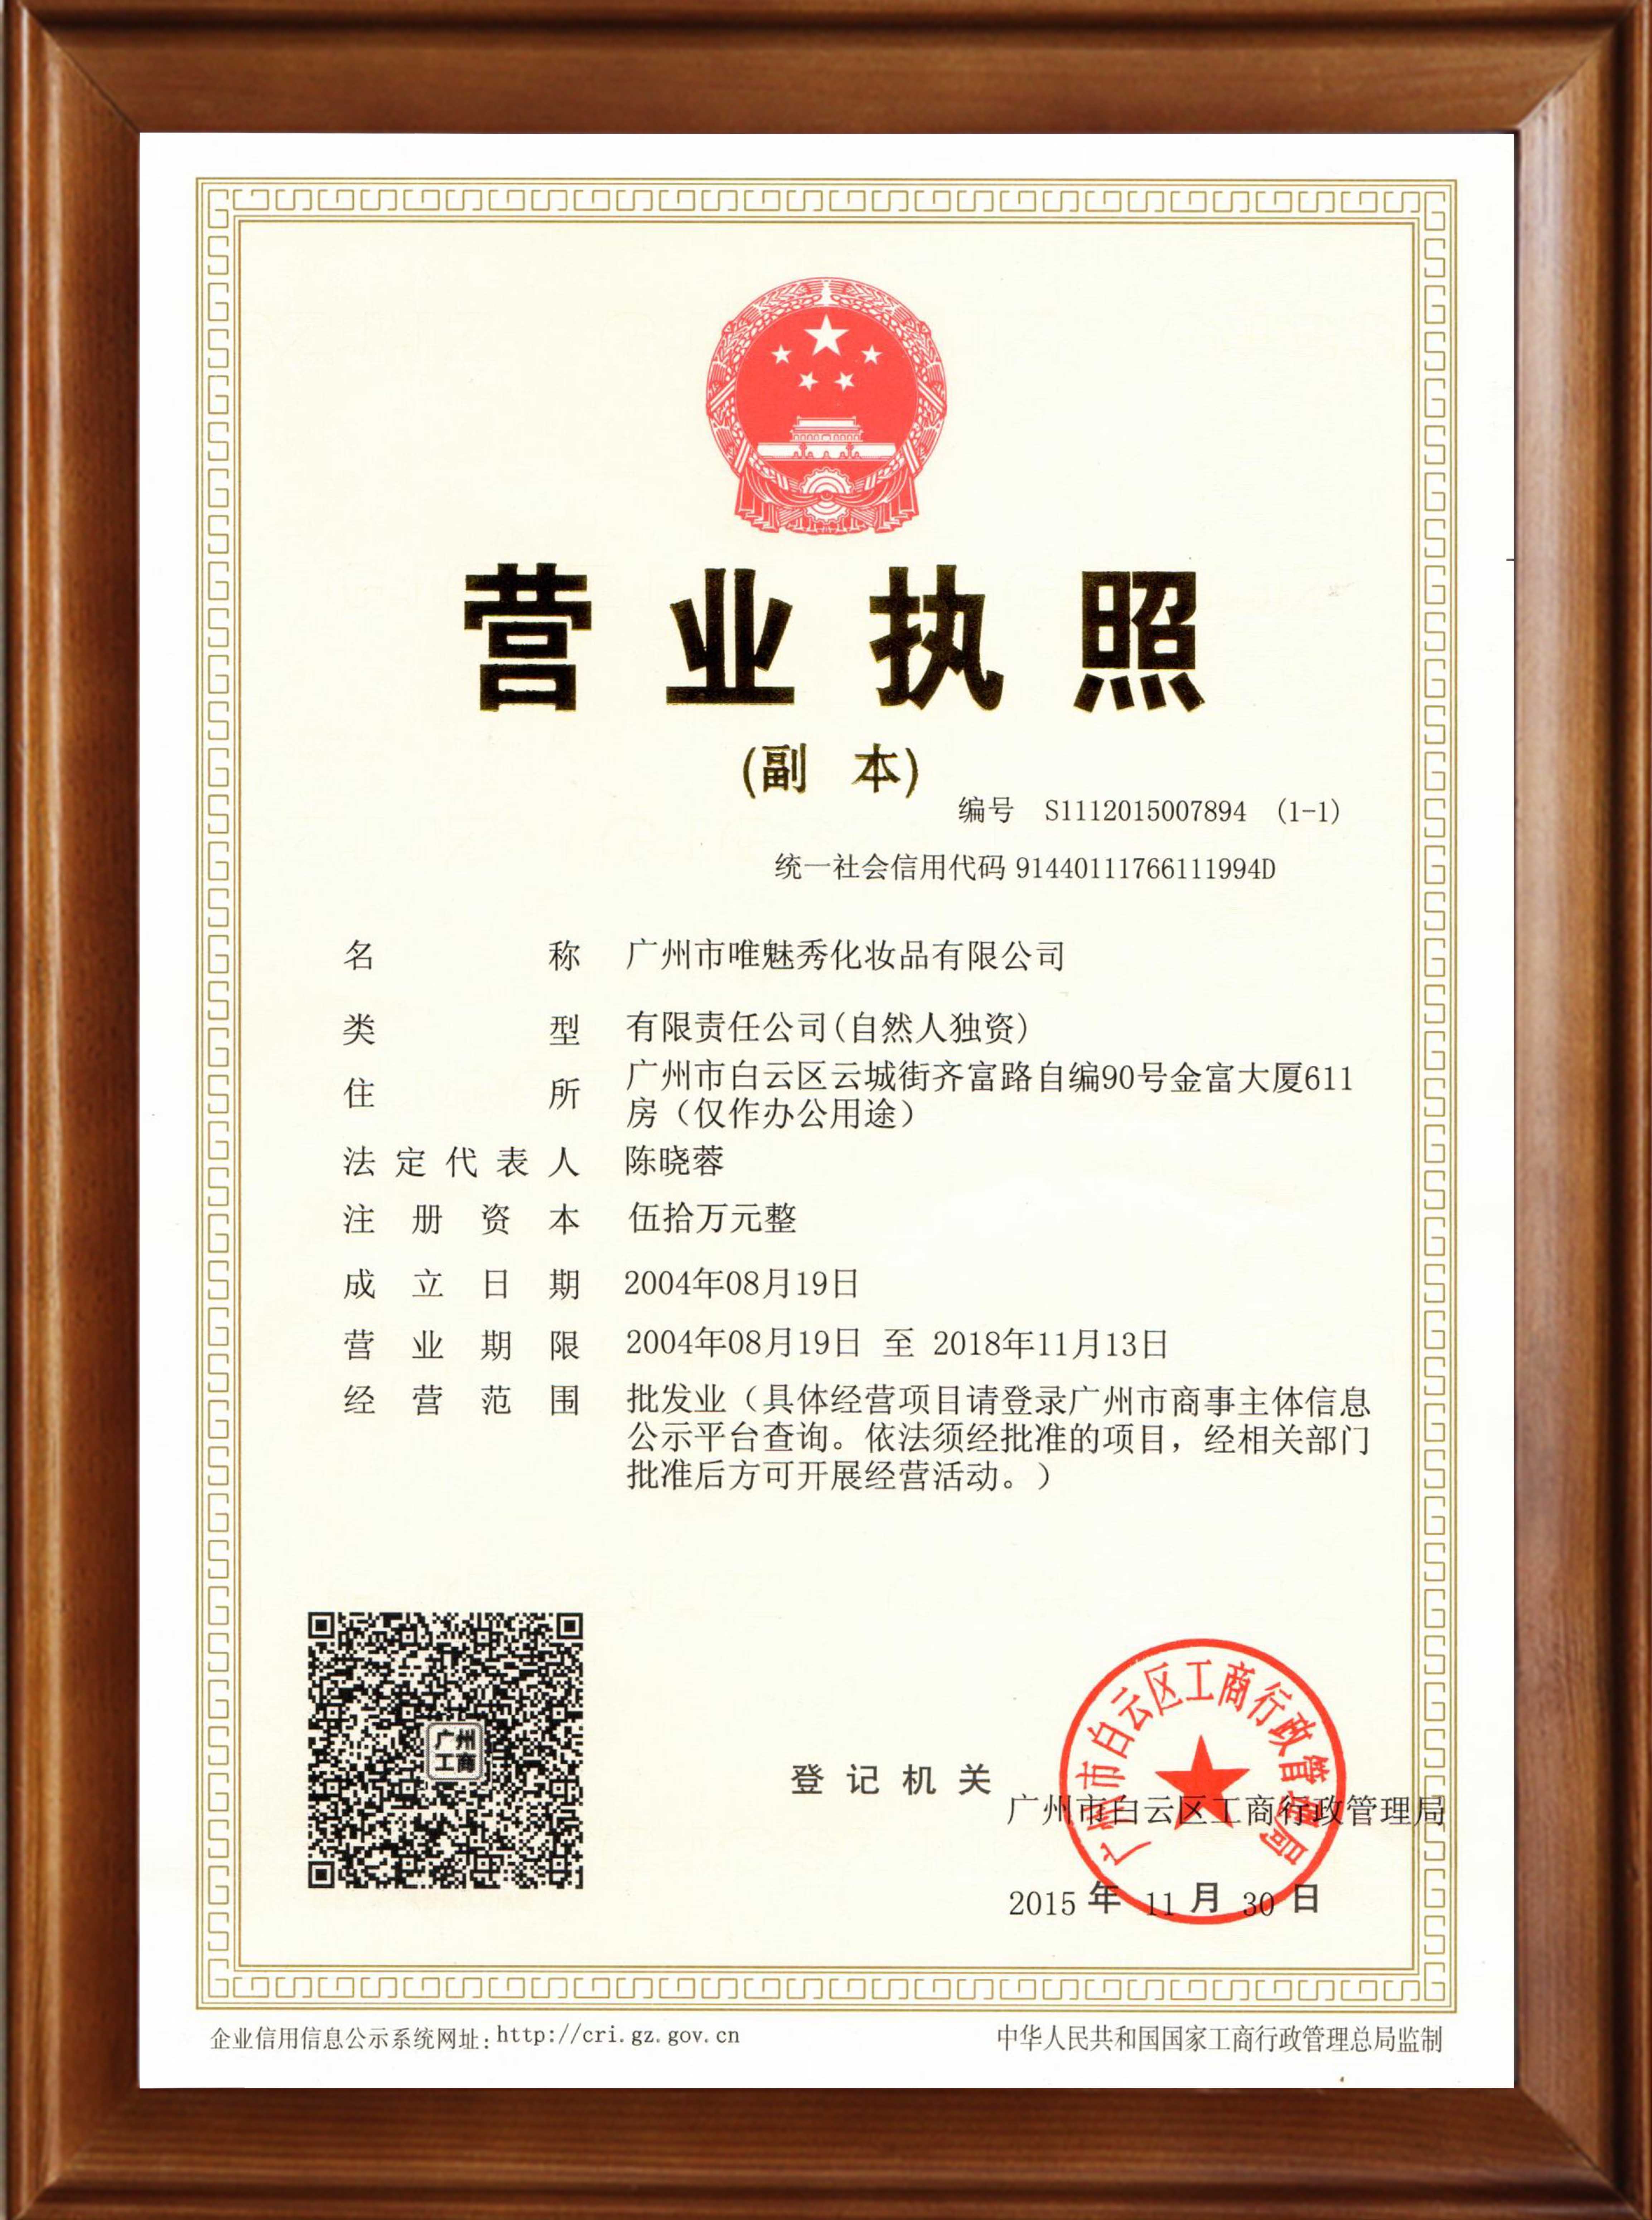 WEIMEISHOW business license